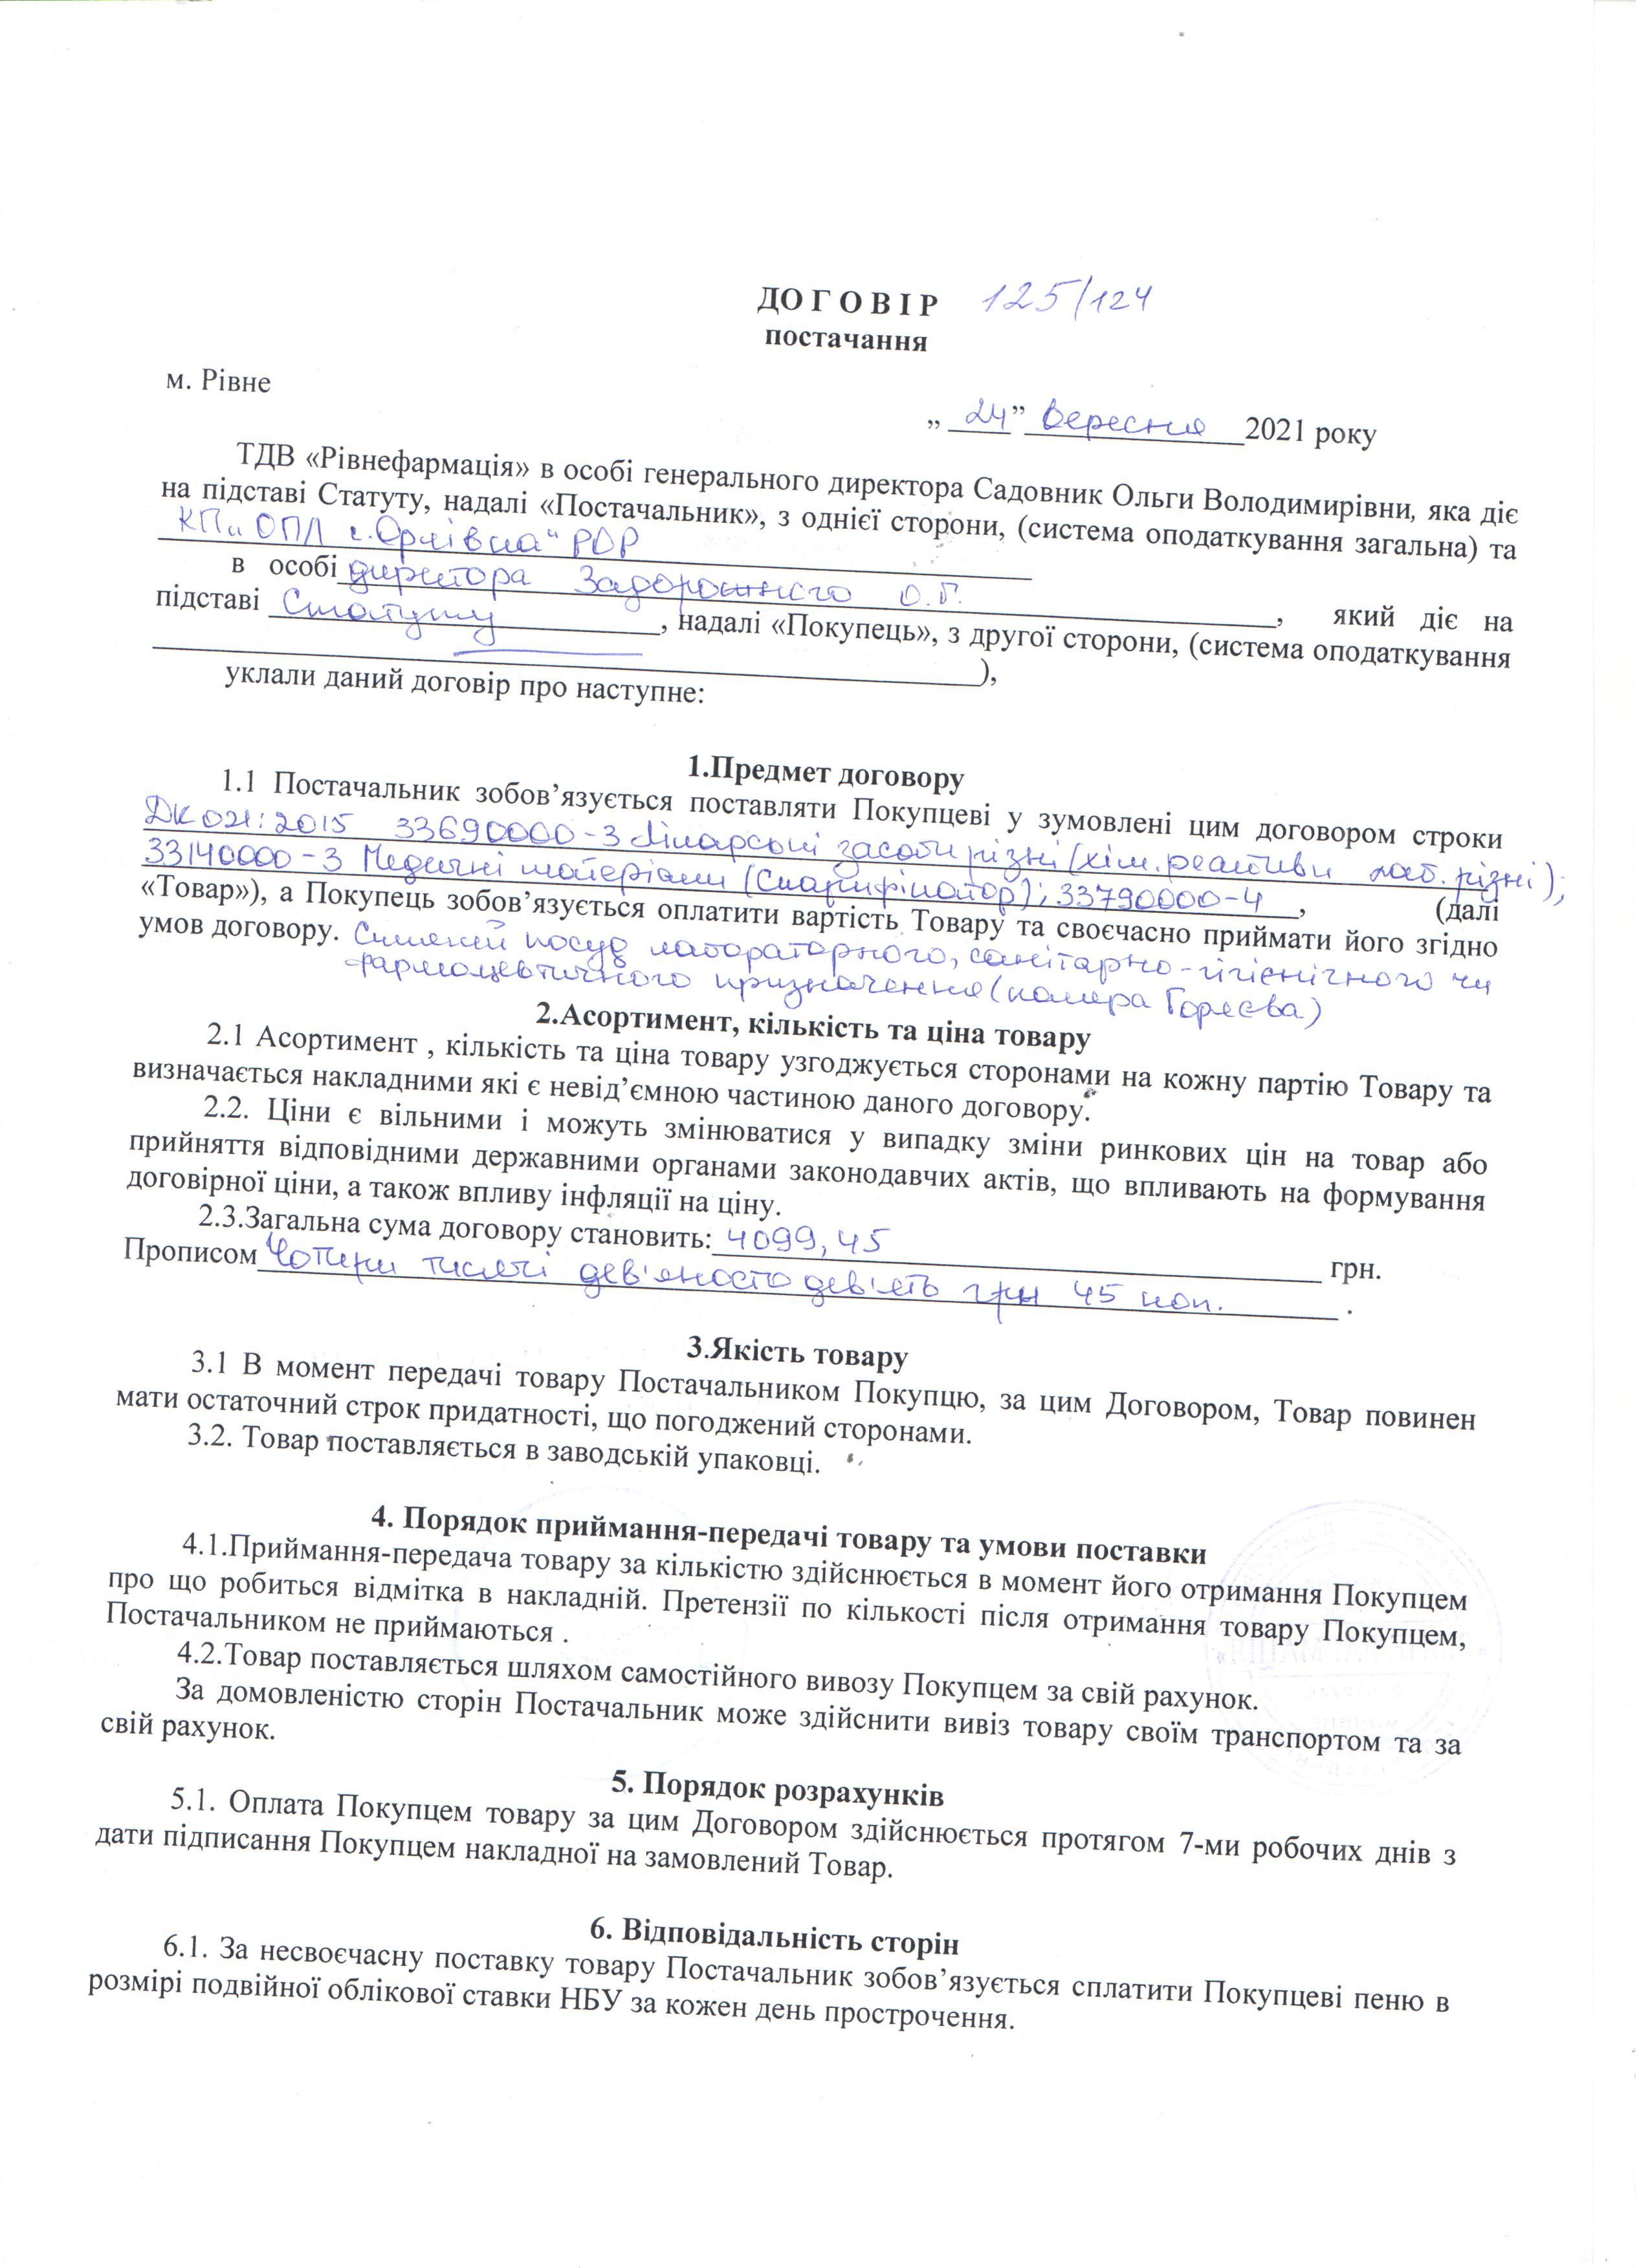 Договір №125/124 (1) від 24.09.2021 р